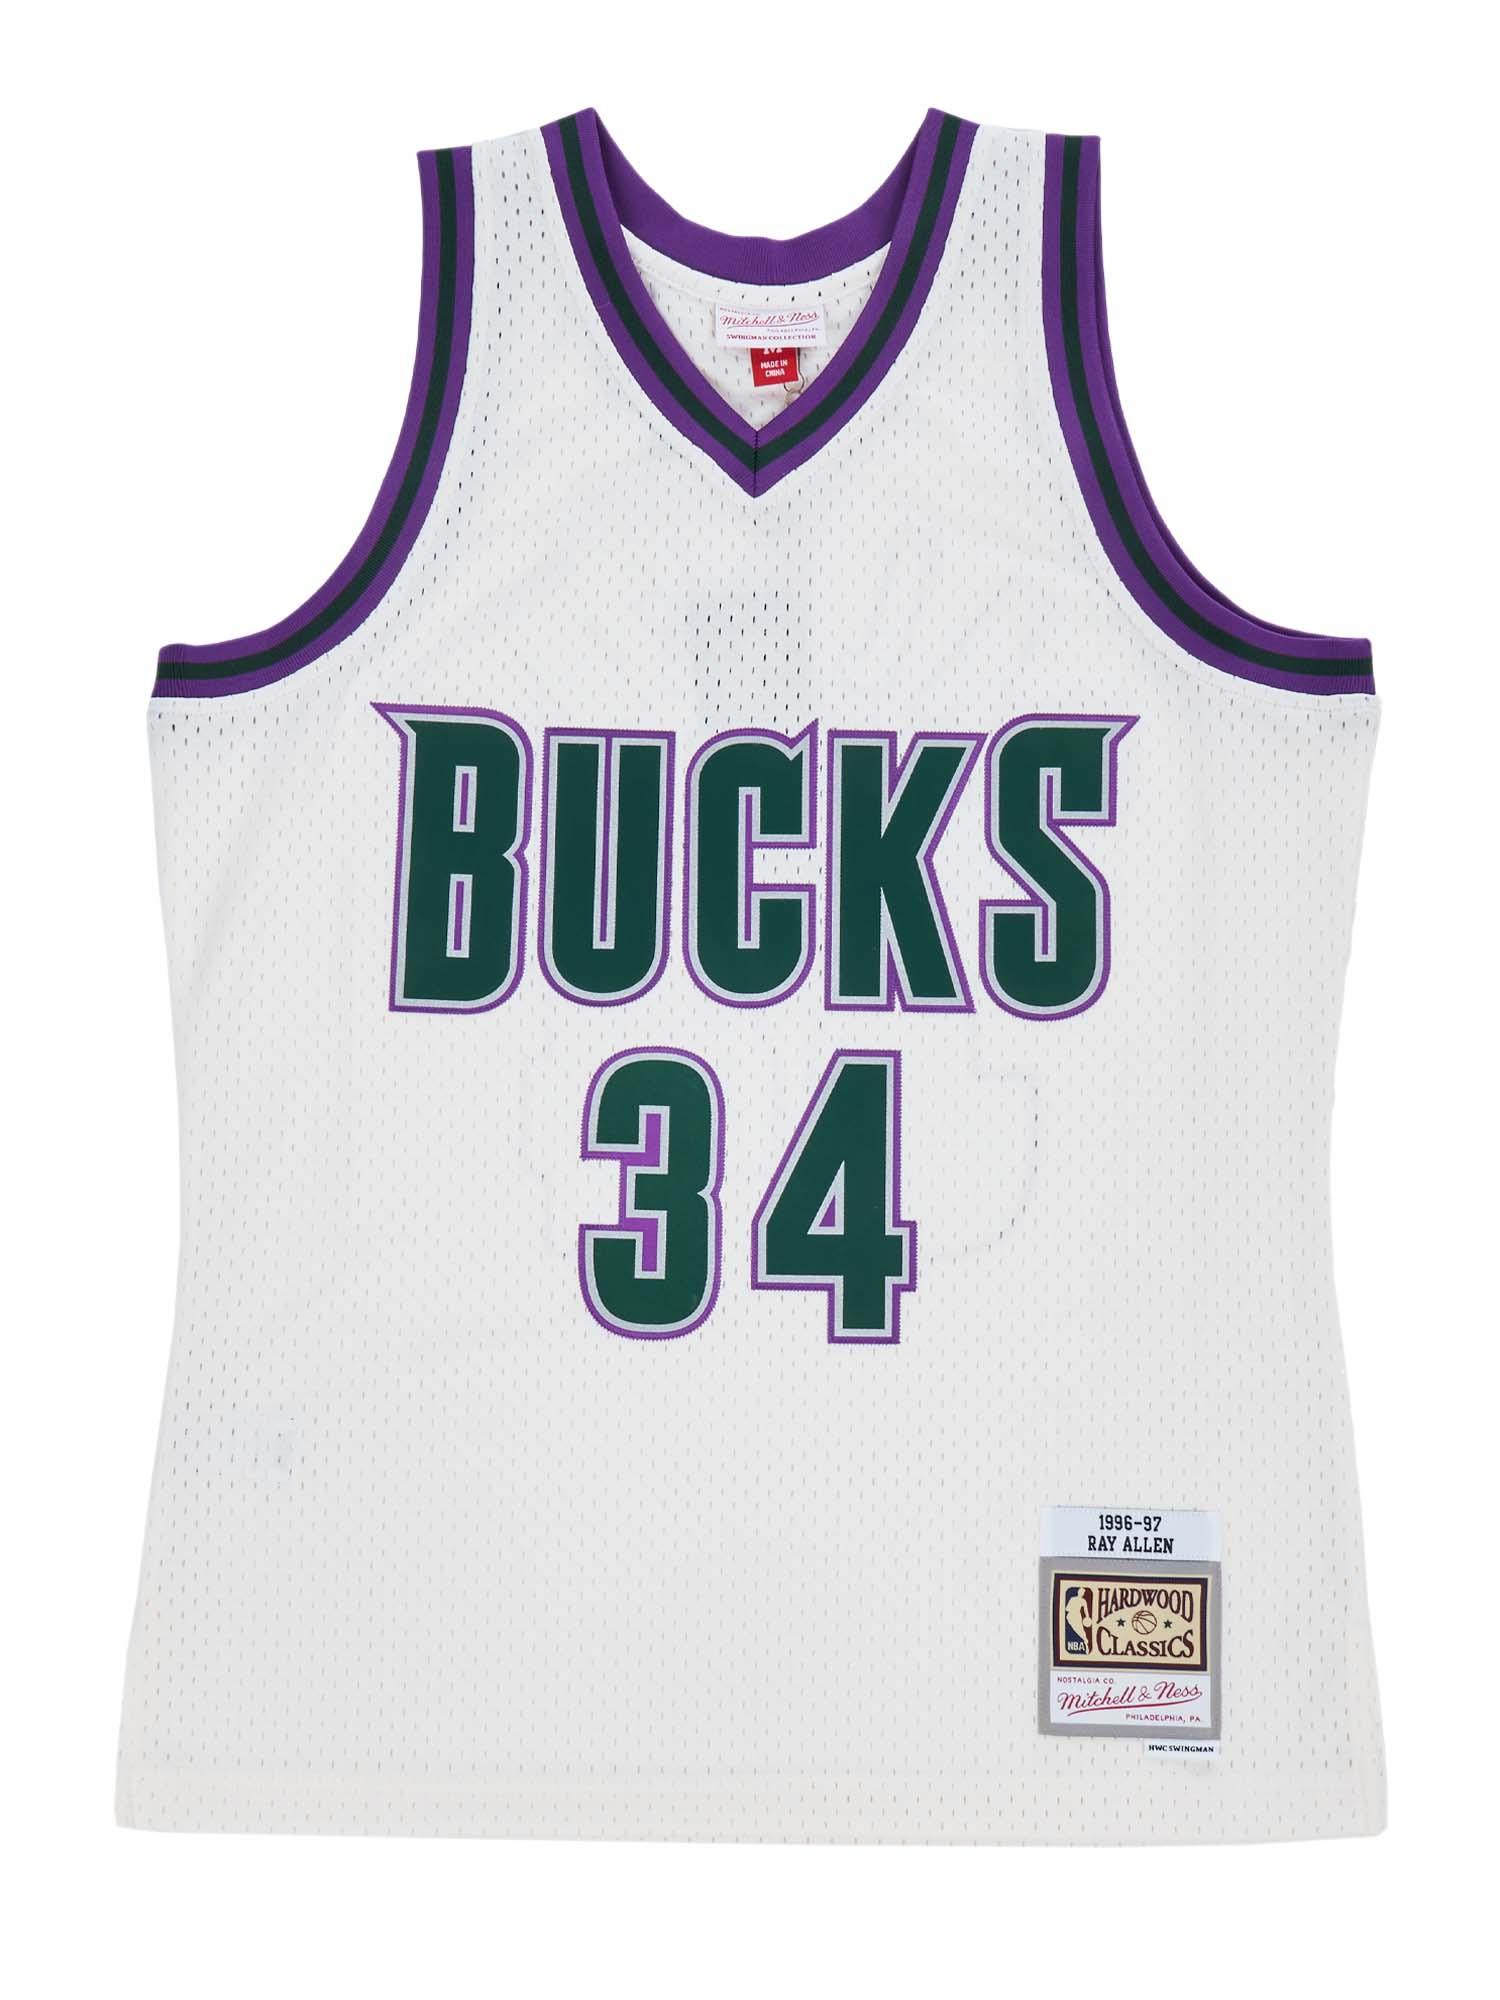 Ray Allen Milwaukee Bucks NBA Jerseys for sale